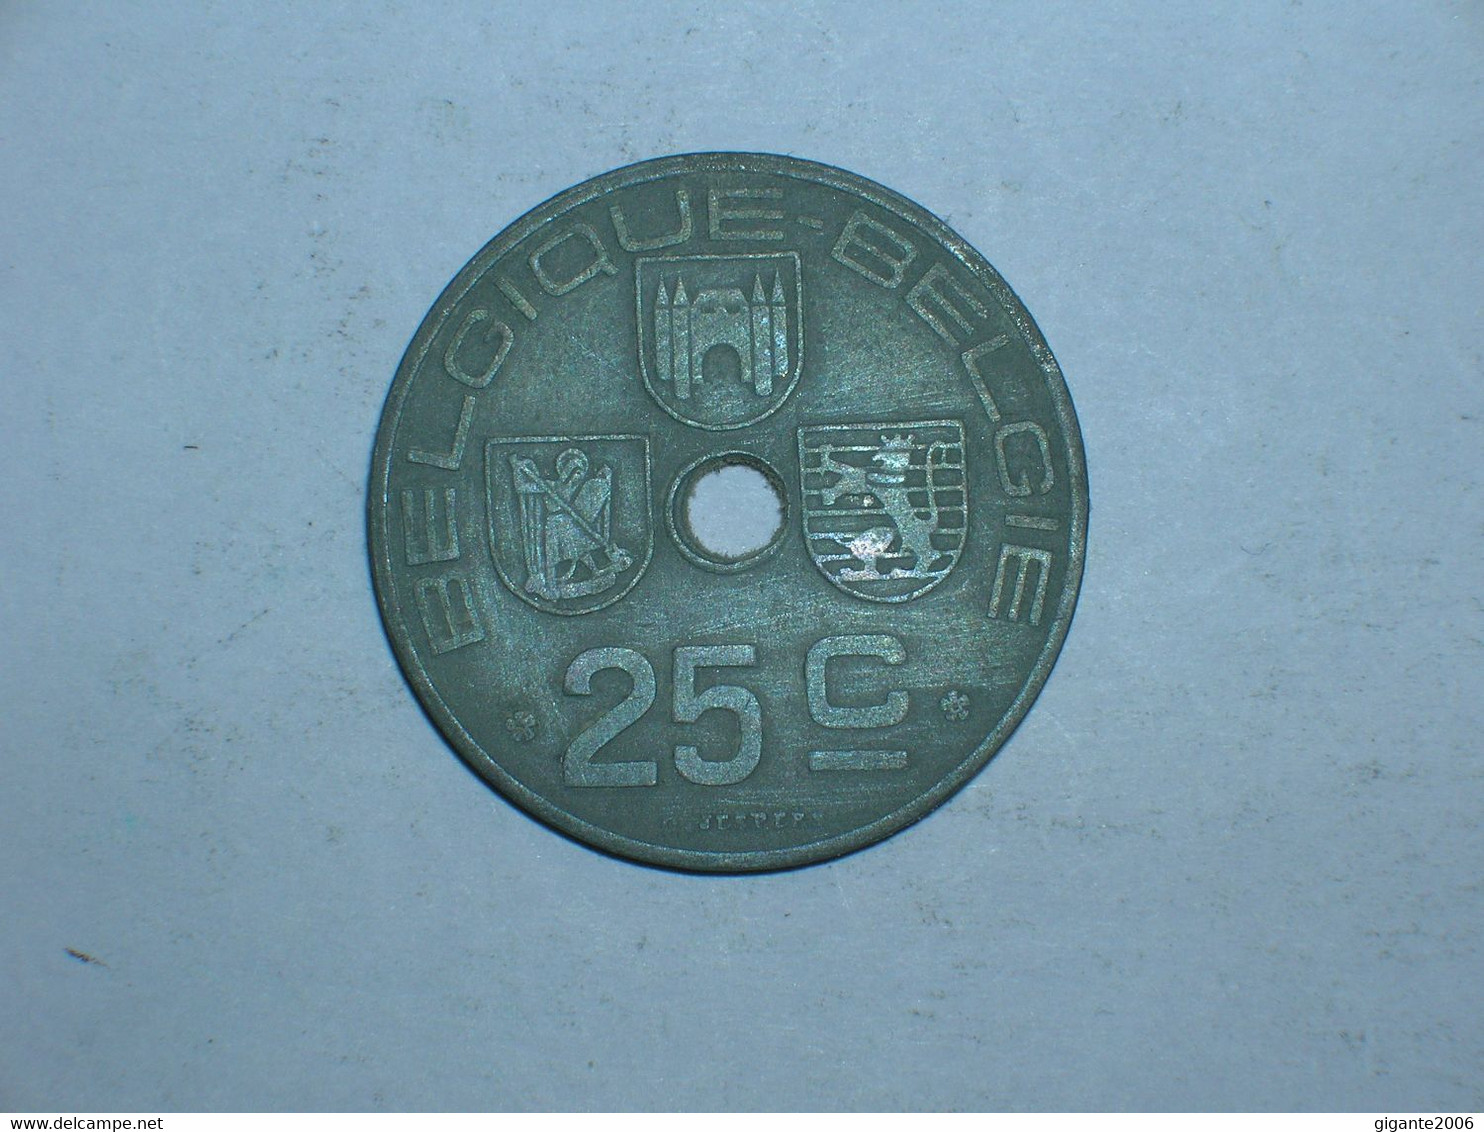 BELGICA 25 CENTIMOS 1946 FR (8981) - 25 Centimes